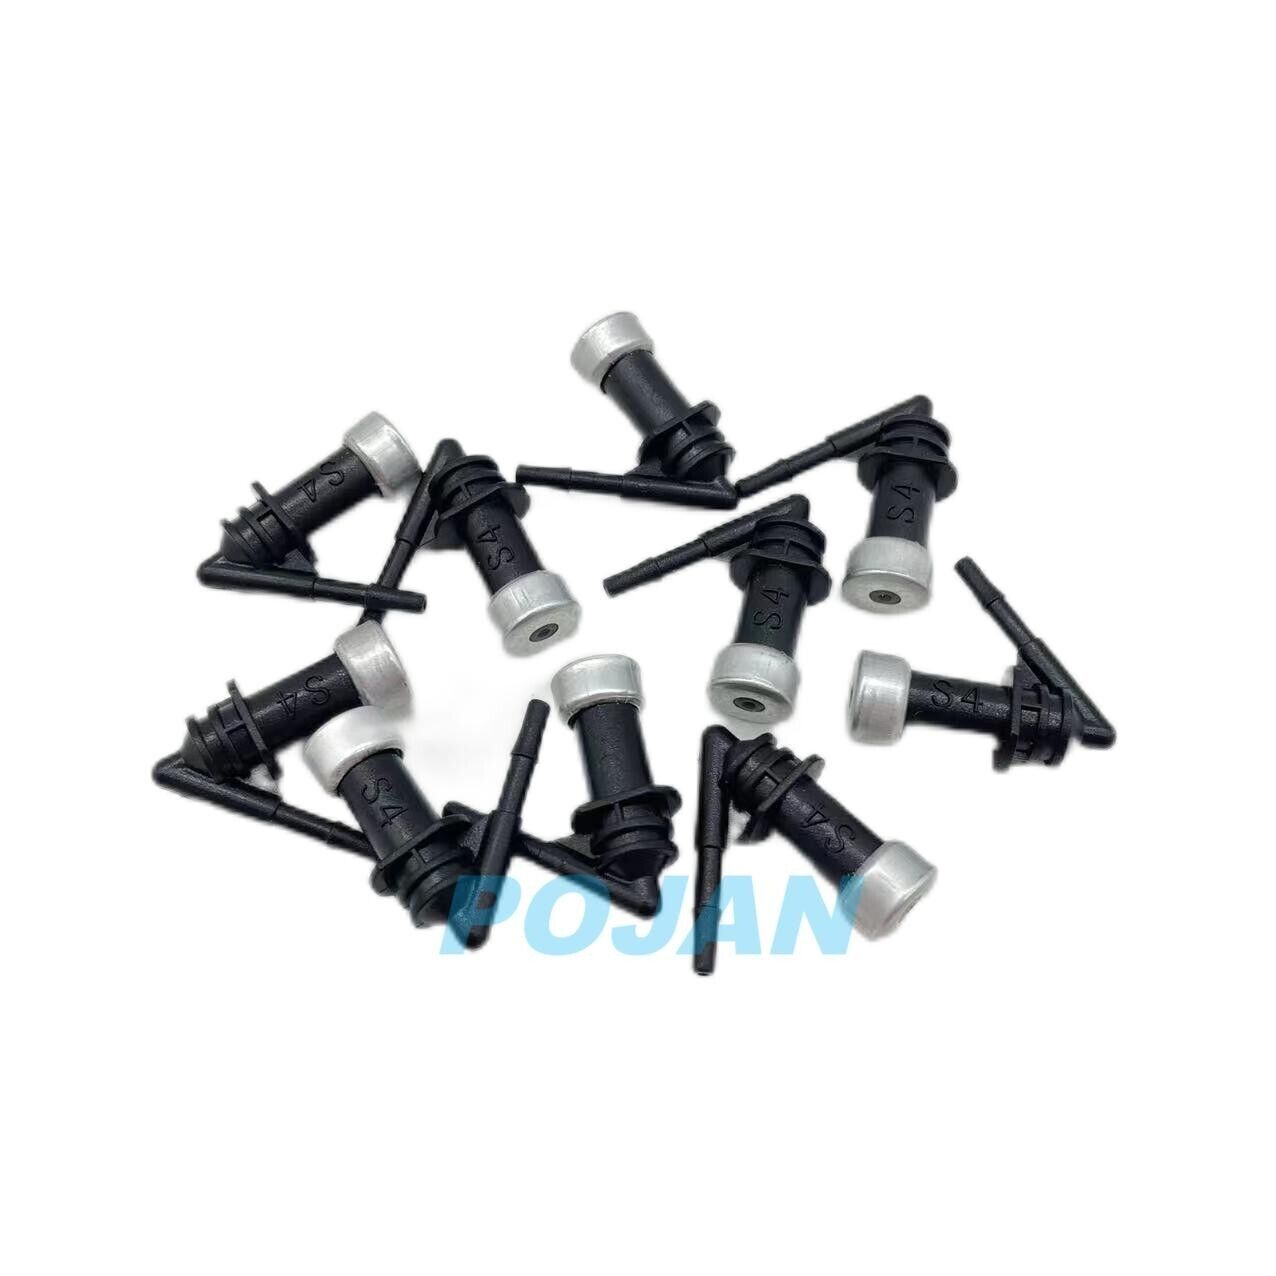 10 X K839-6700 Ink Tube Nozzle for HP Designjet T1100 T610 T770 Z2100 T790 T1200